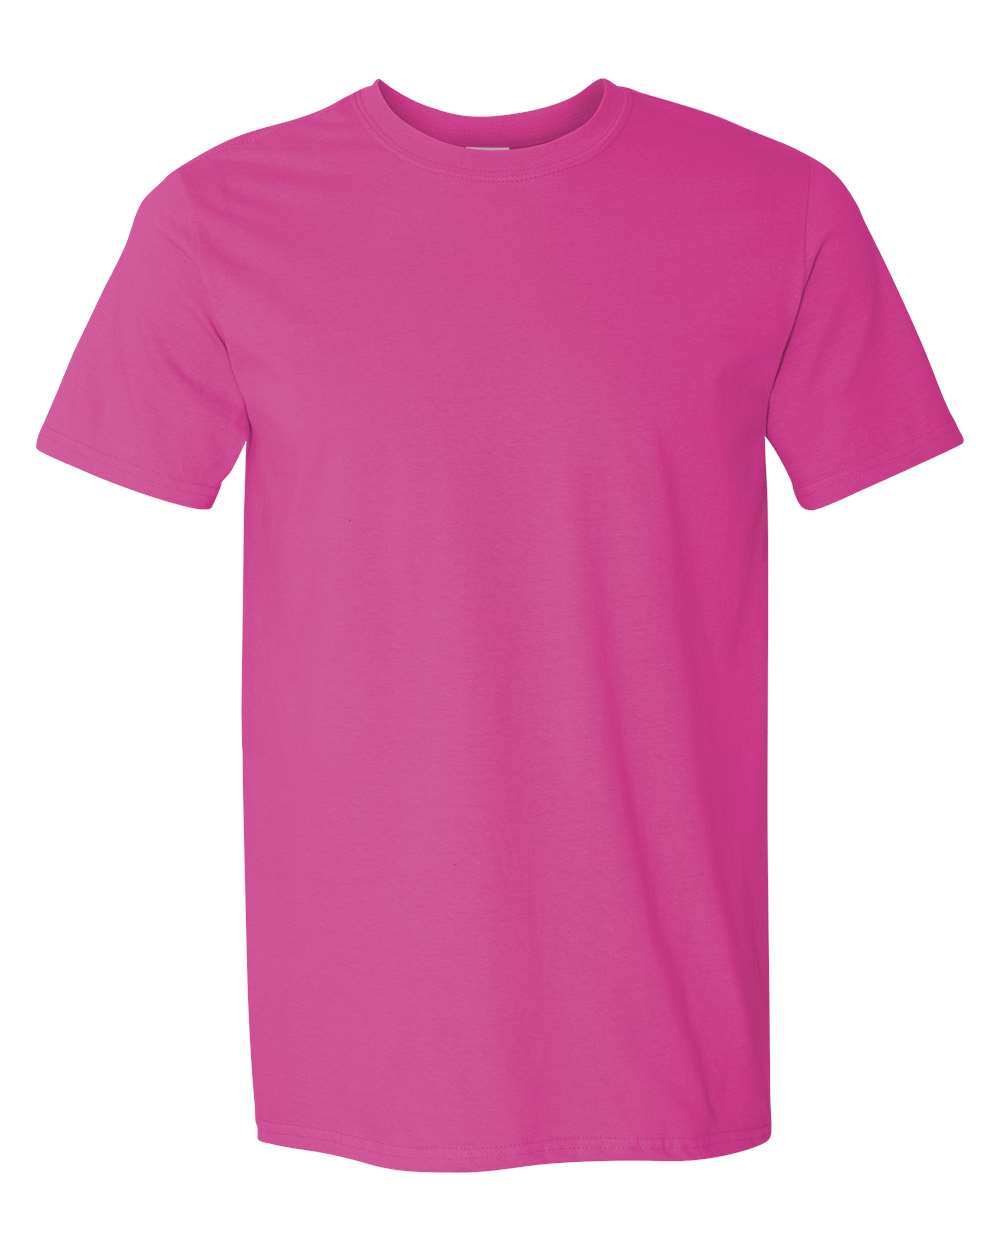 Pink Boys T-Shirt